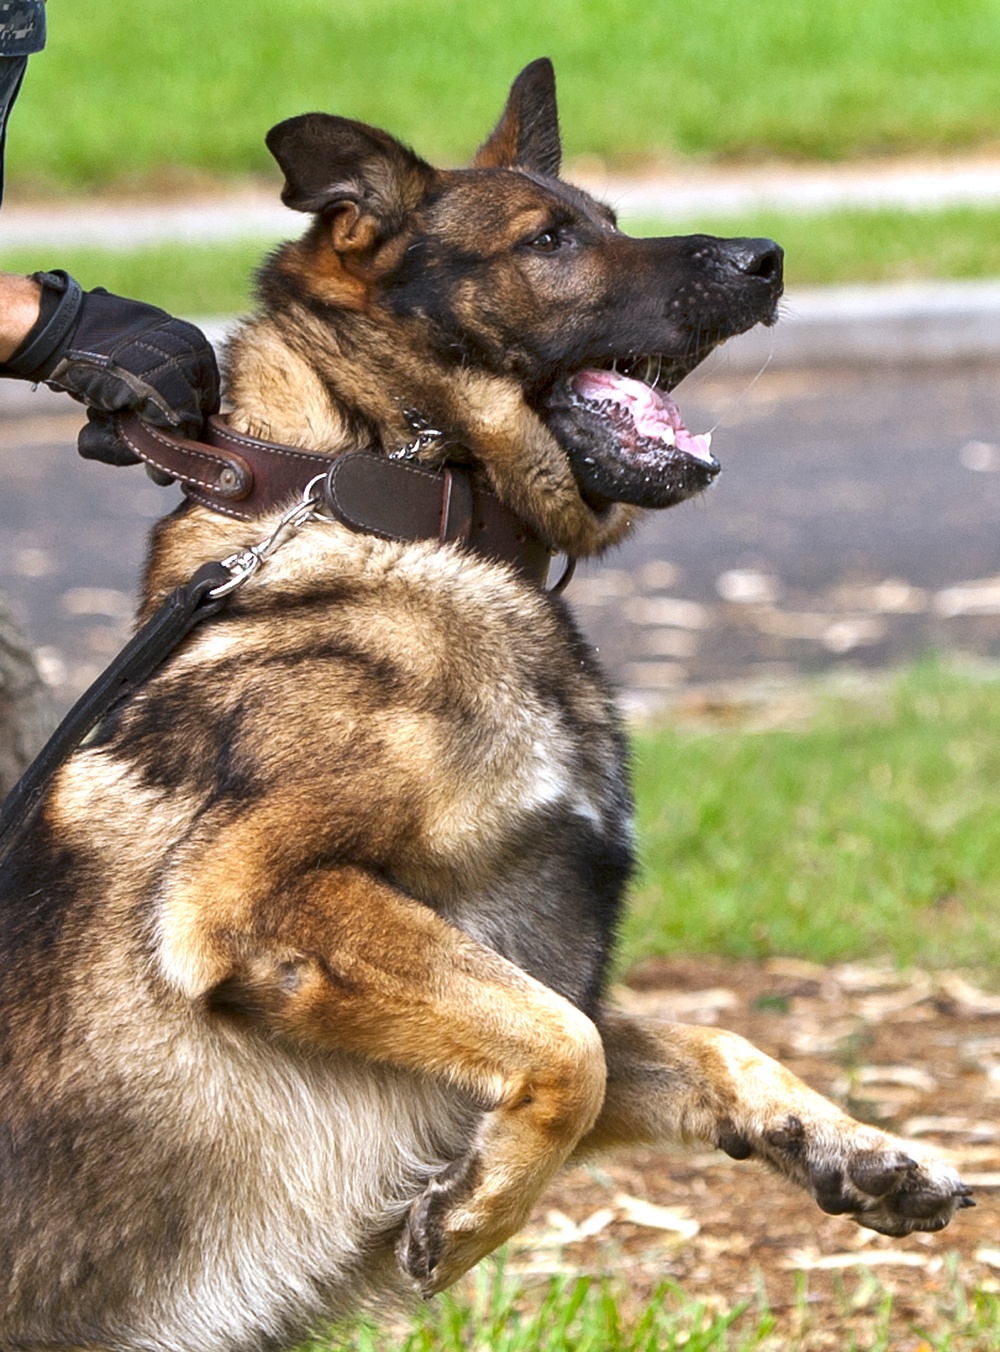 Military working dog training exercises